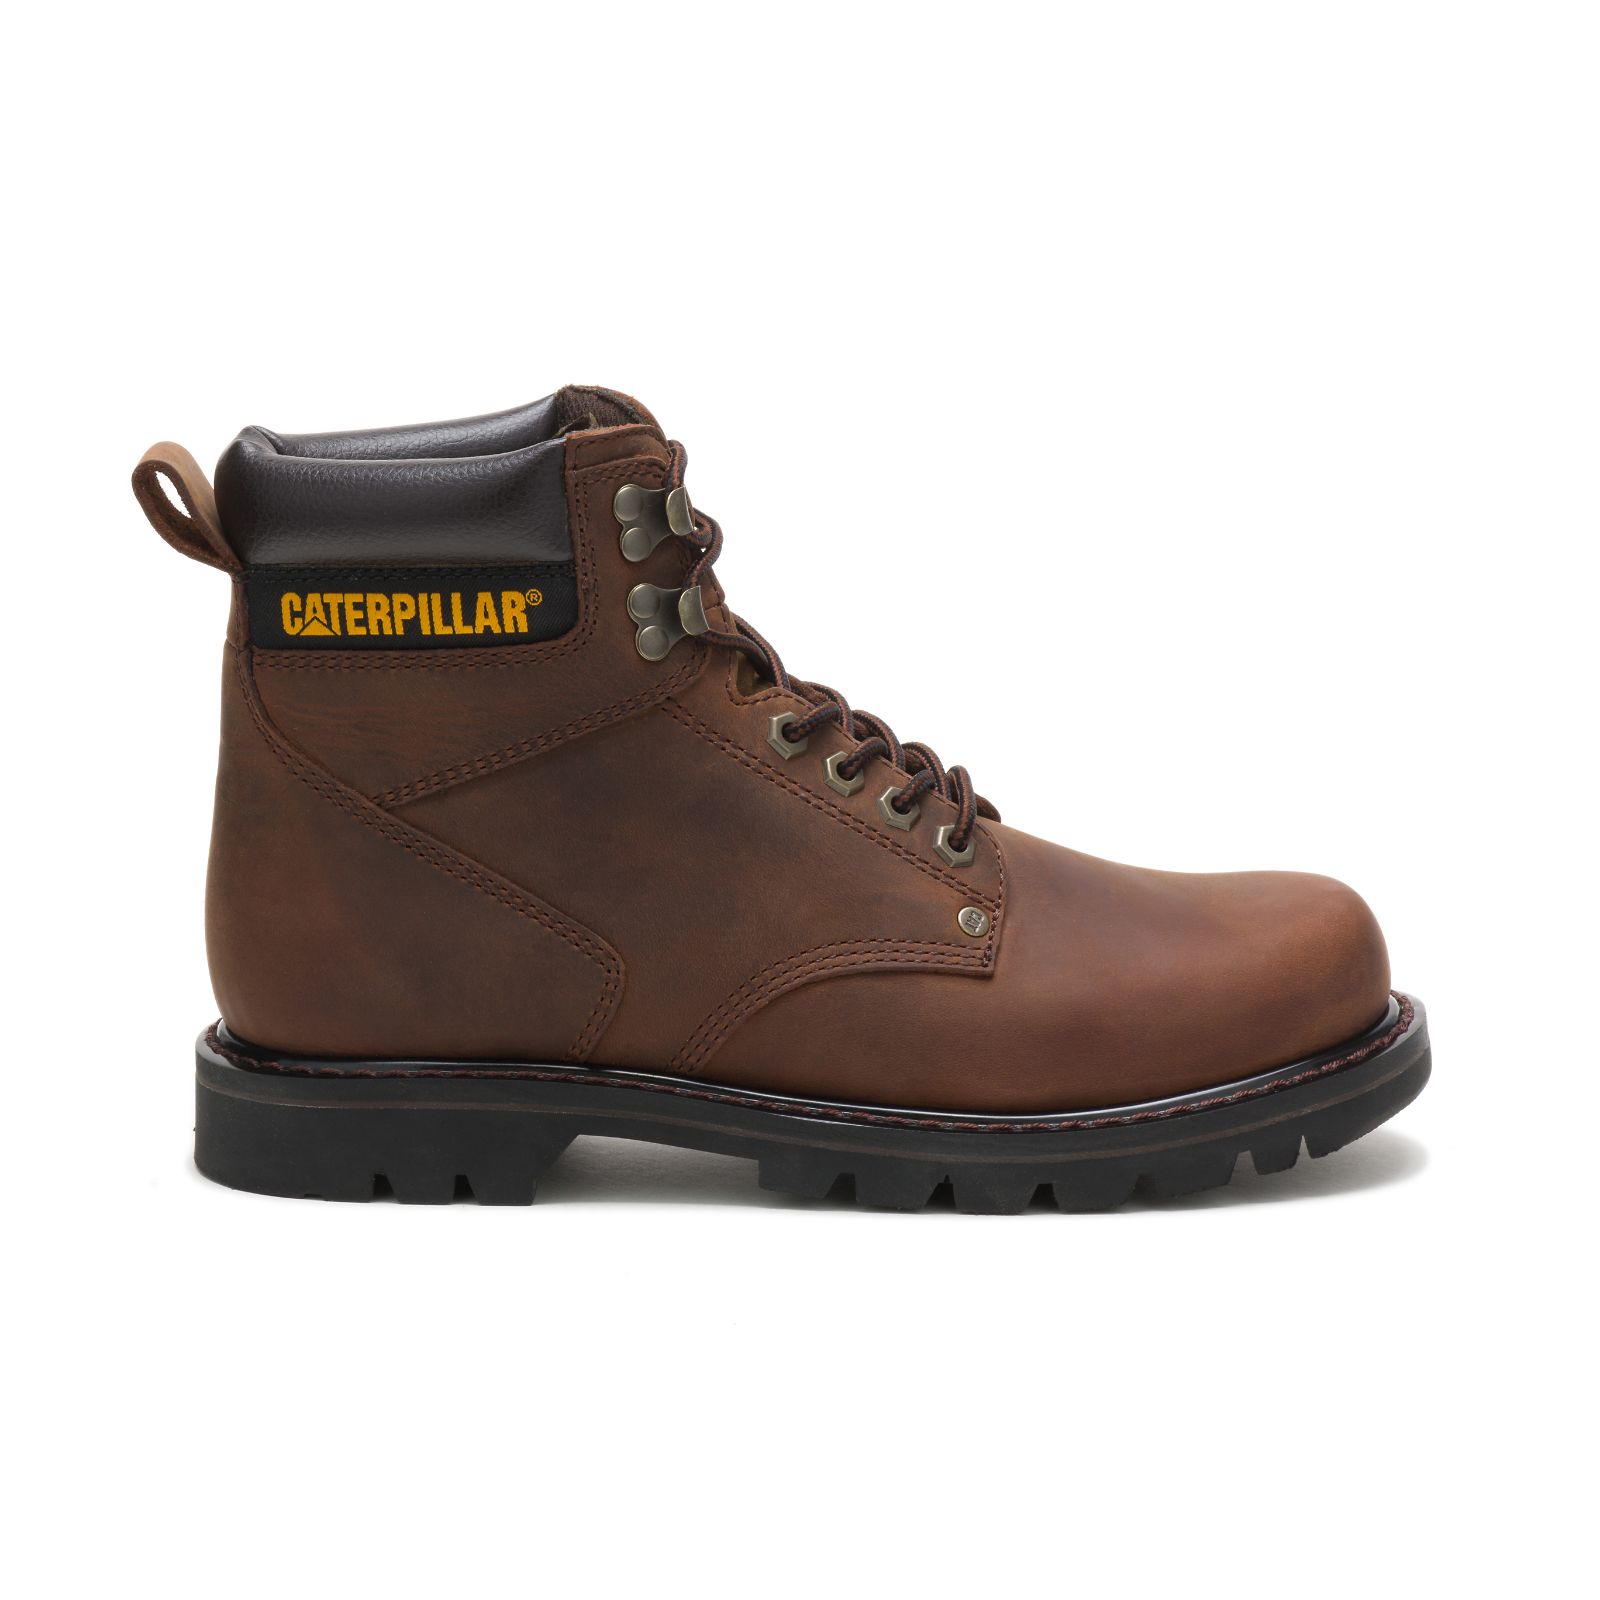 Caterpillar Second Shift - Mens Work Boots - Dark Brown - NZ (259YMRJHP)